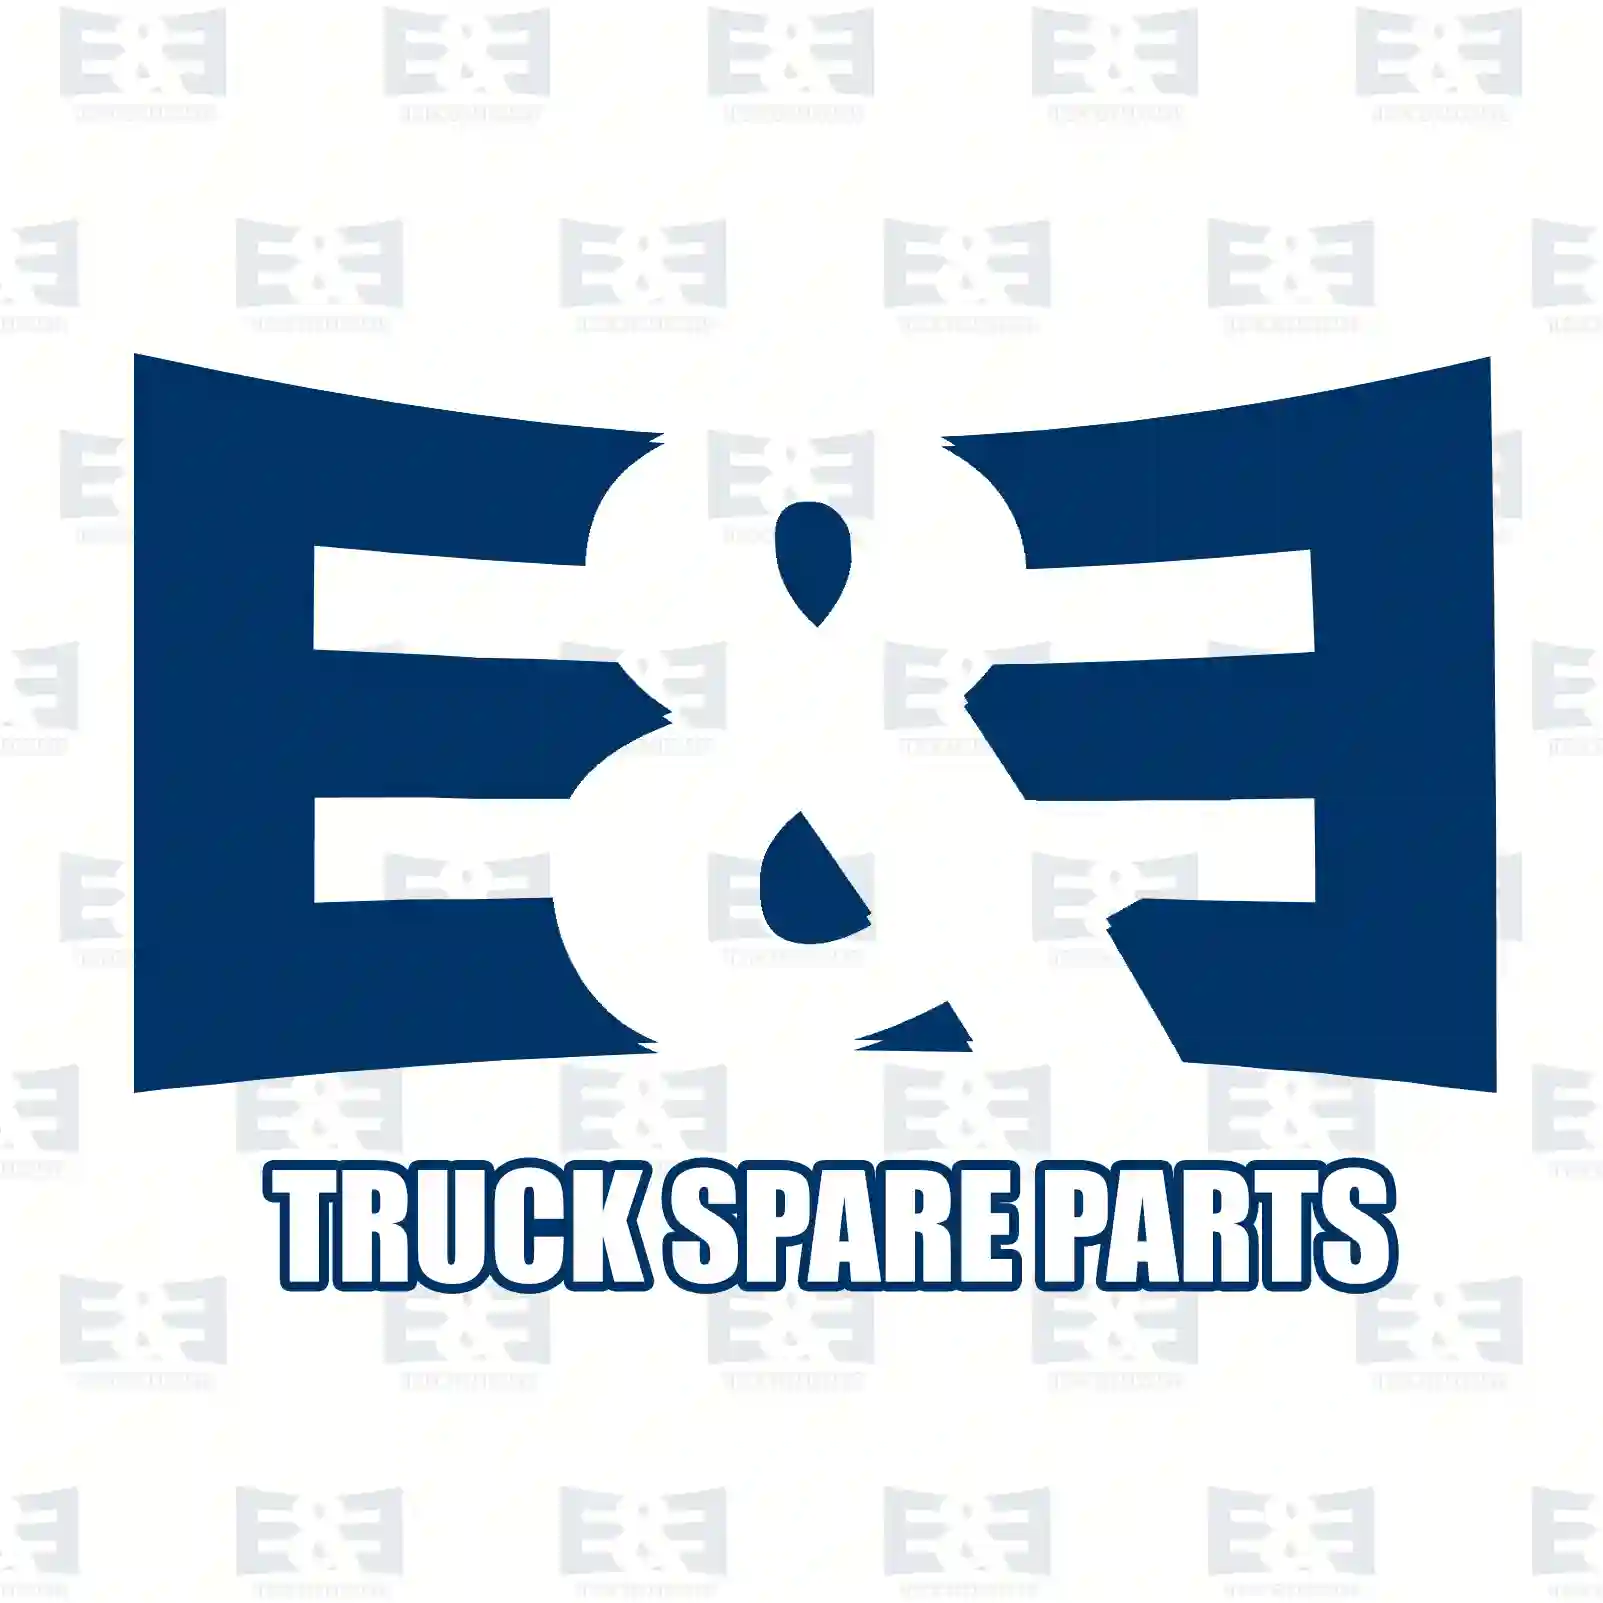 Step well case, right, 2E2280063, 1656924, 1656928, 1796245, 1836305 ||  2E2280063 E&E Truck Spare Parts | Truck Spare Parts, Auotomotive Spare Parts Step well case, right, 2E2280063, 1656924, 1656928, 1796245, 1836305 ||  2E2280063 E&E Truck Spare Parts | Truck Spare Parts, Auotomotive Spare Parts